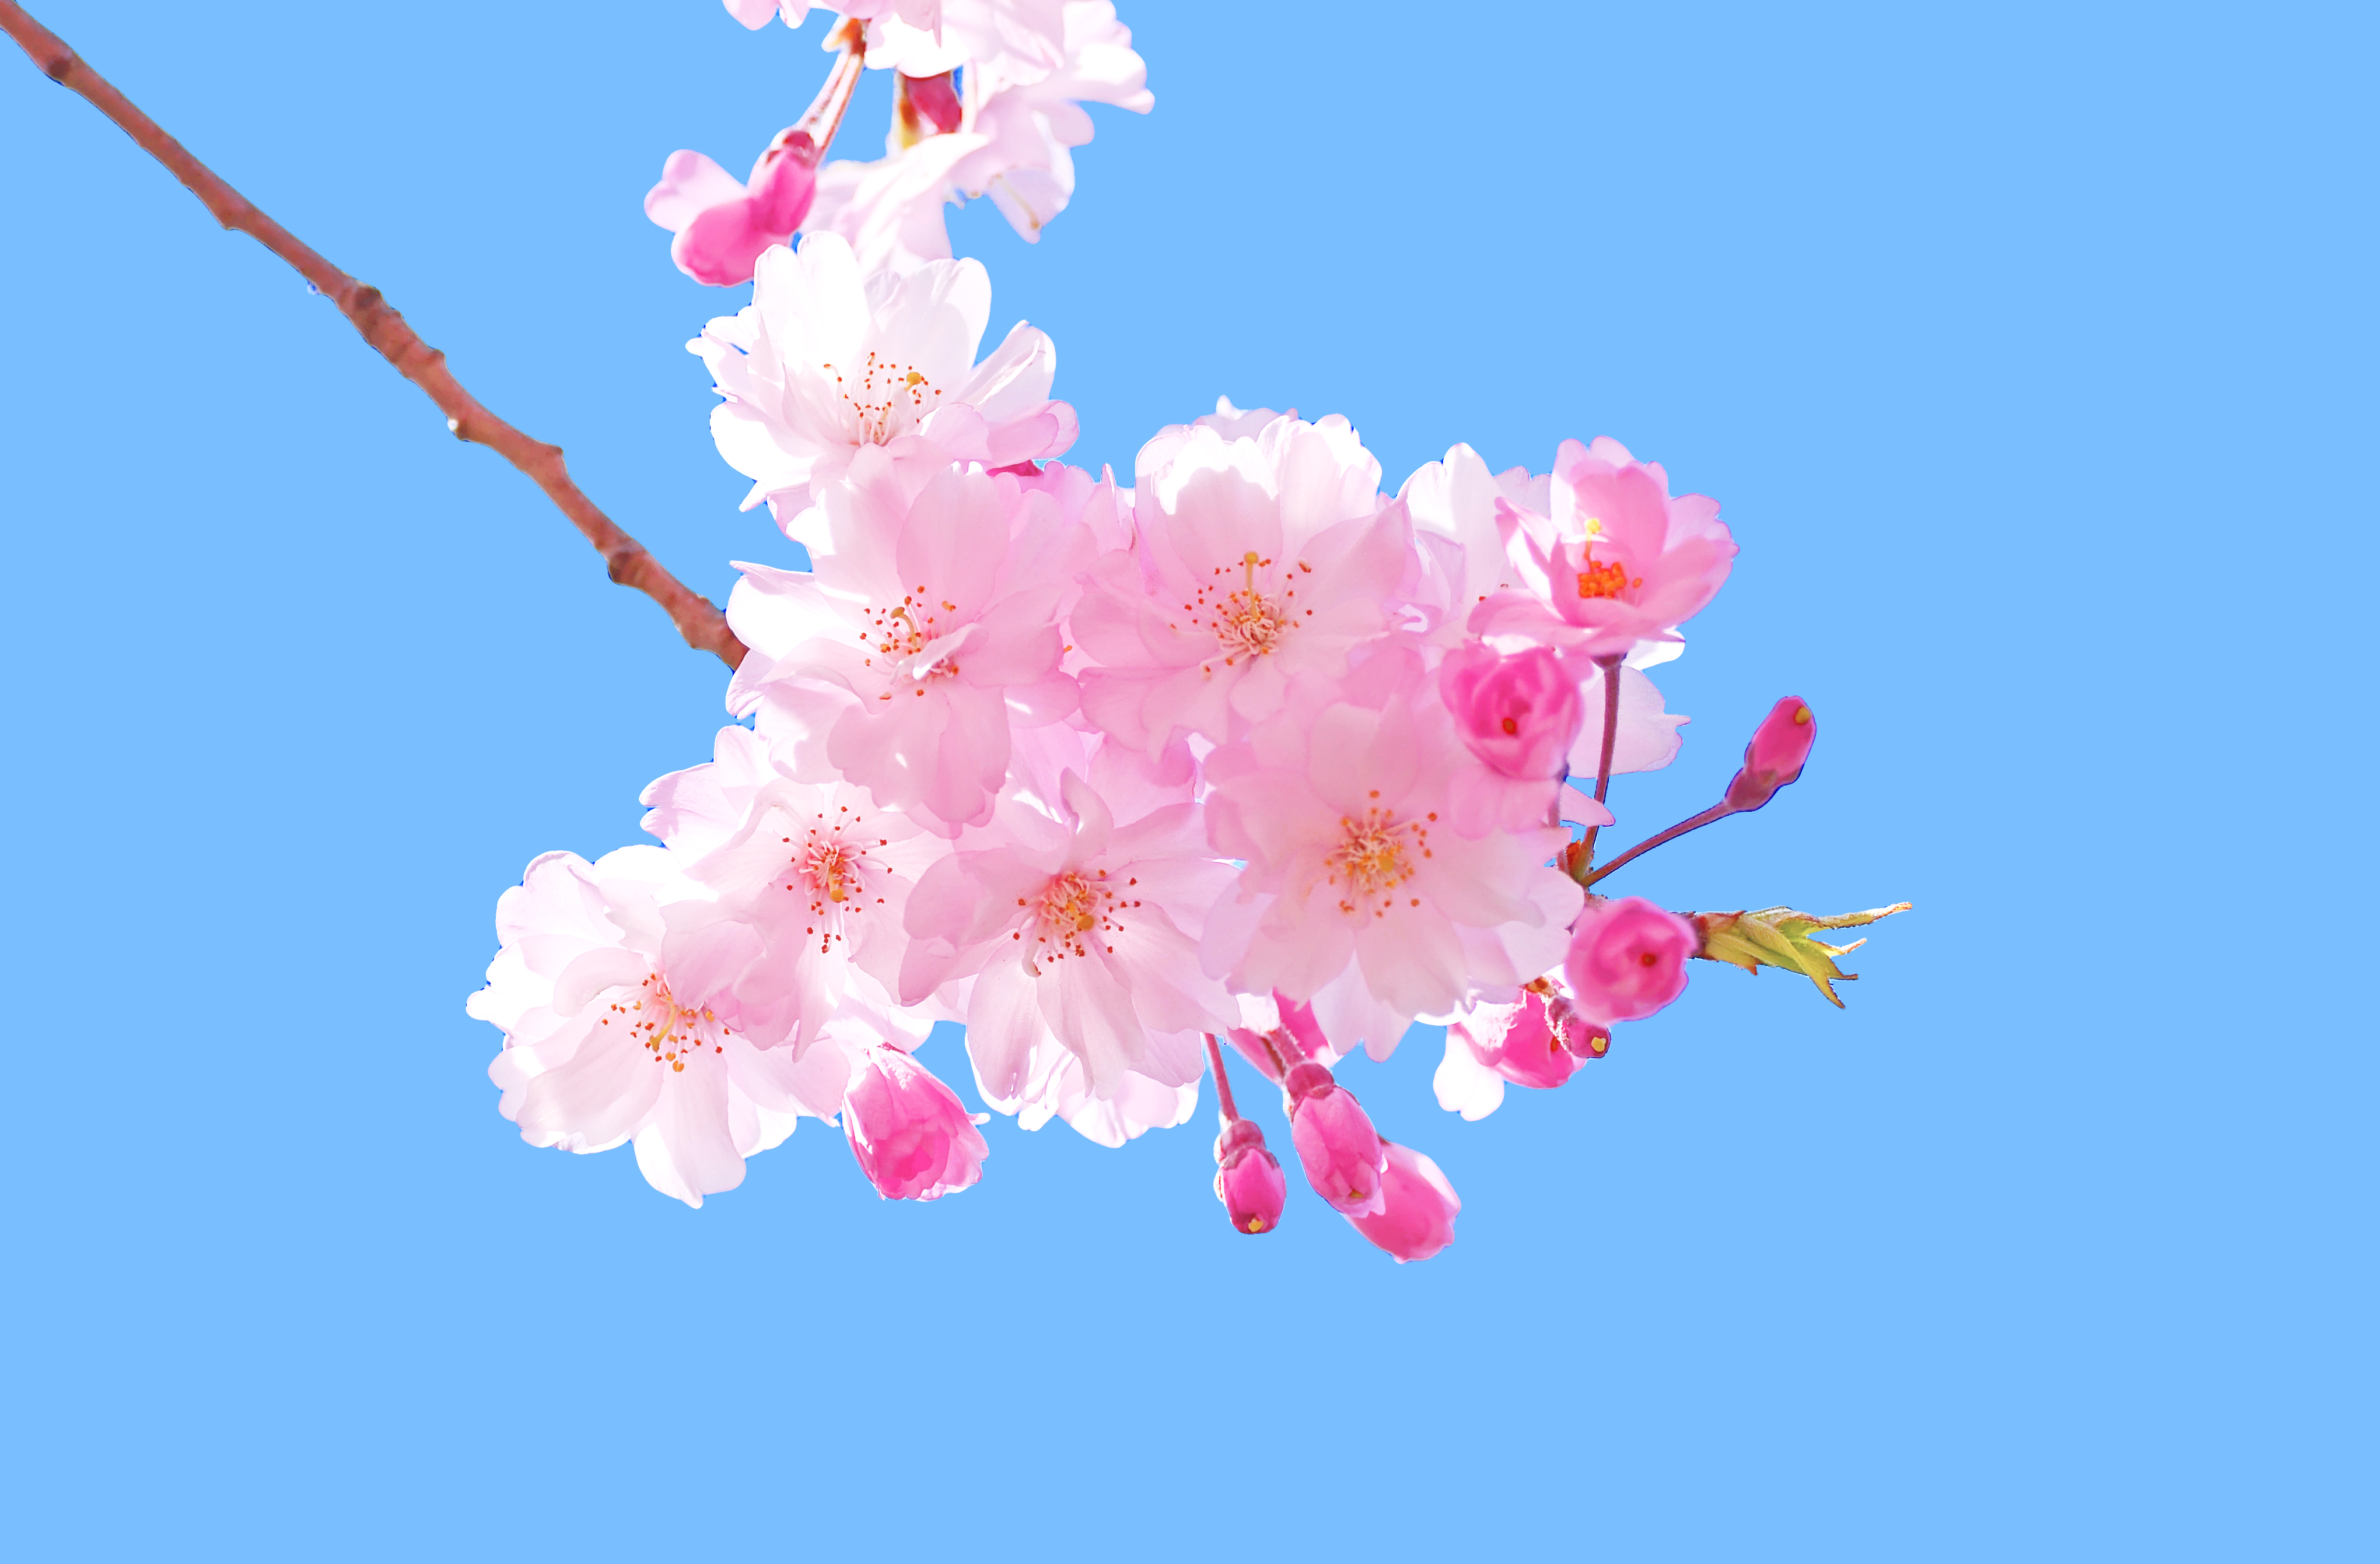 Blossoms - Vào mùa xuân, đất trời được phủ đầy sắc hoa. Đón nhận những cảm giác mới lạ khi thấy những bông hoa nở rộ đầy màu sắc. Hãy cùng ngắm nhìn và bắt đầu một ngày mới với năng lượng đầy đủ từ sự tươi mới của hoa blossom.